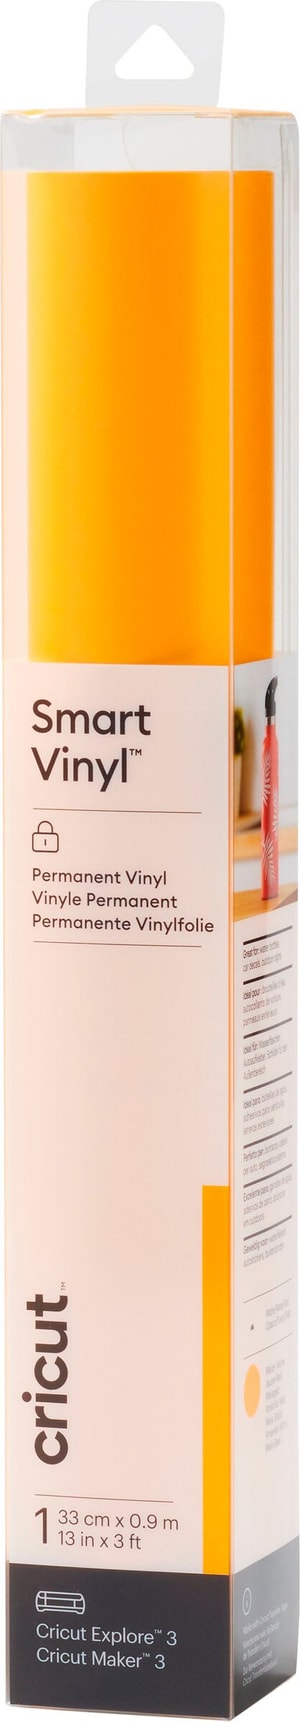 Vinylfolie Smart Matt Permanent 33 x 91 cm, Gelb